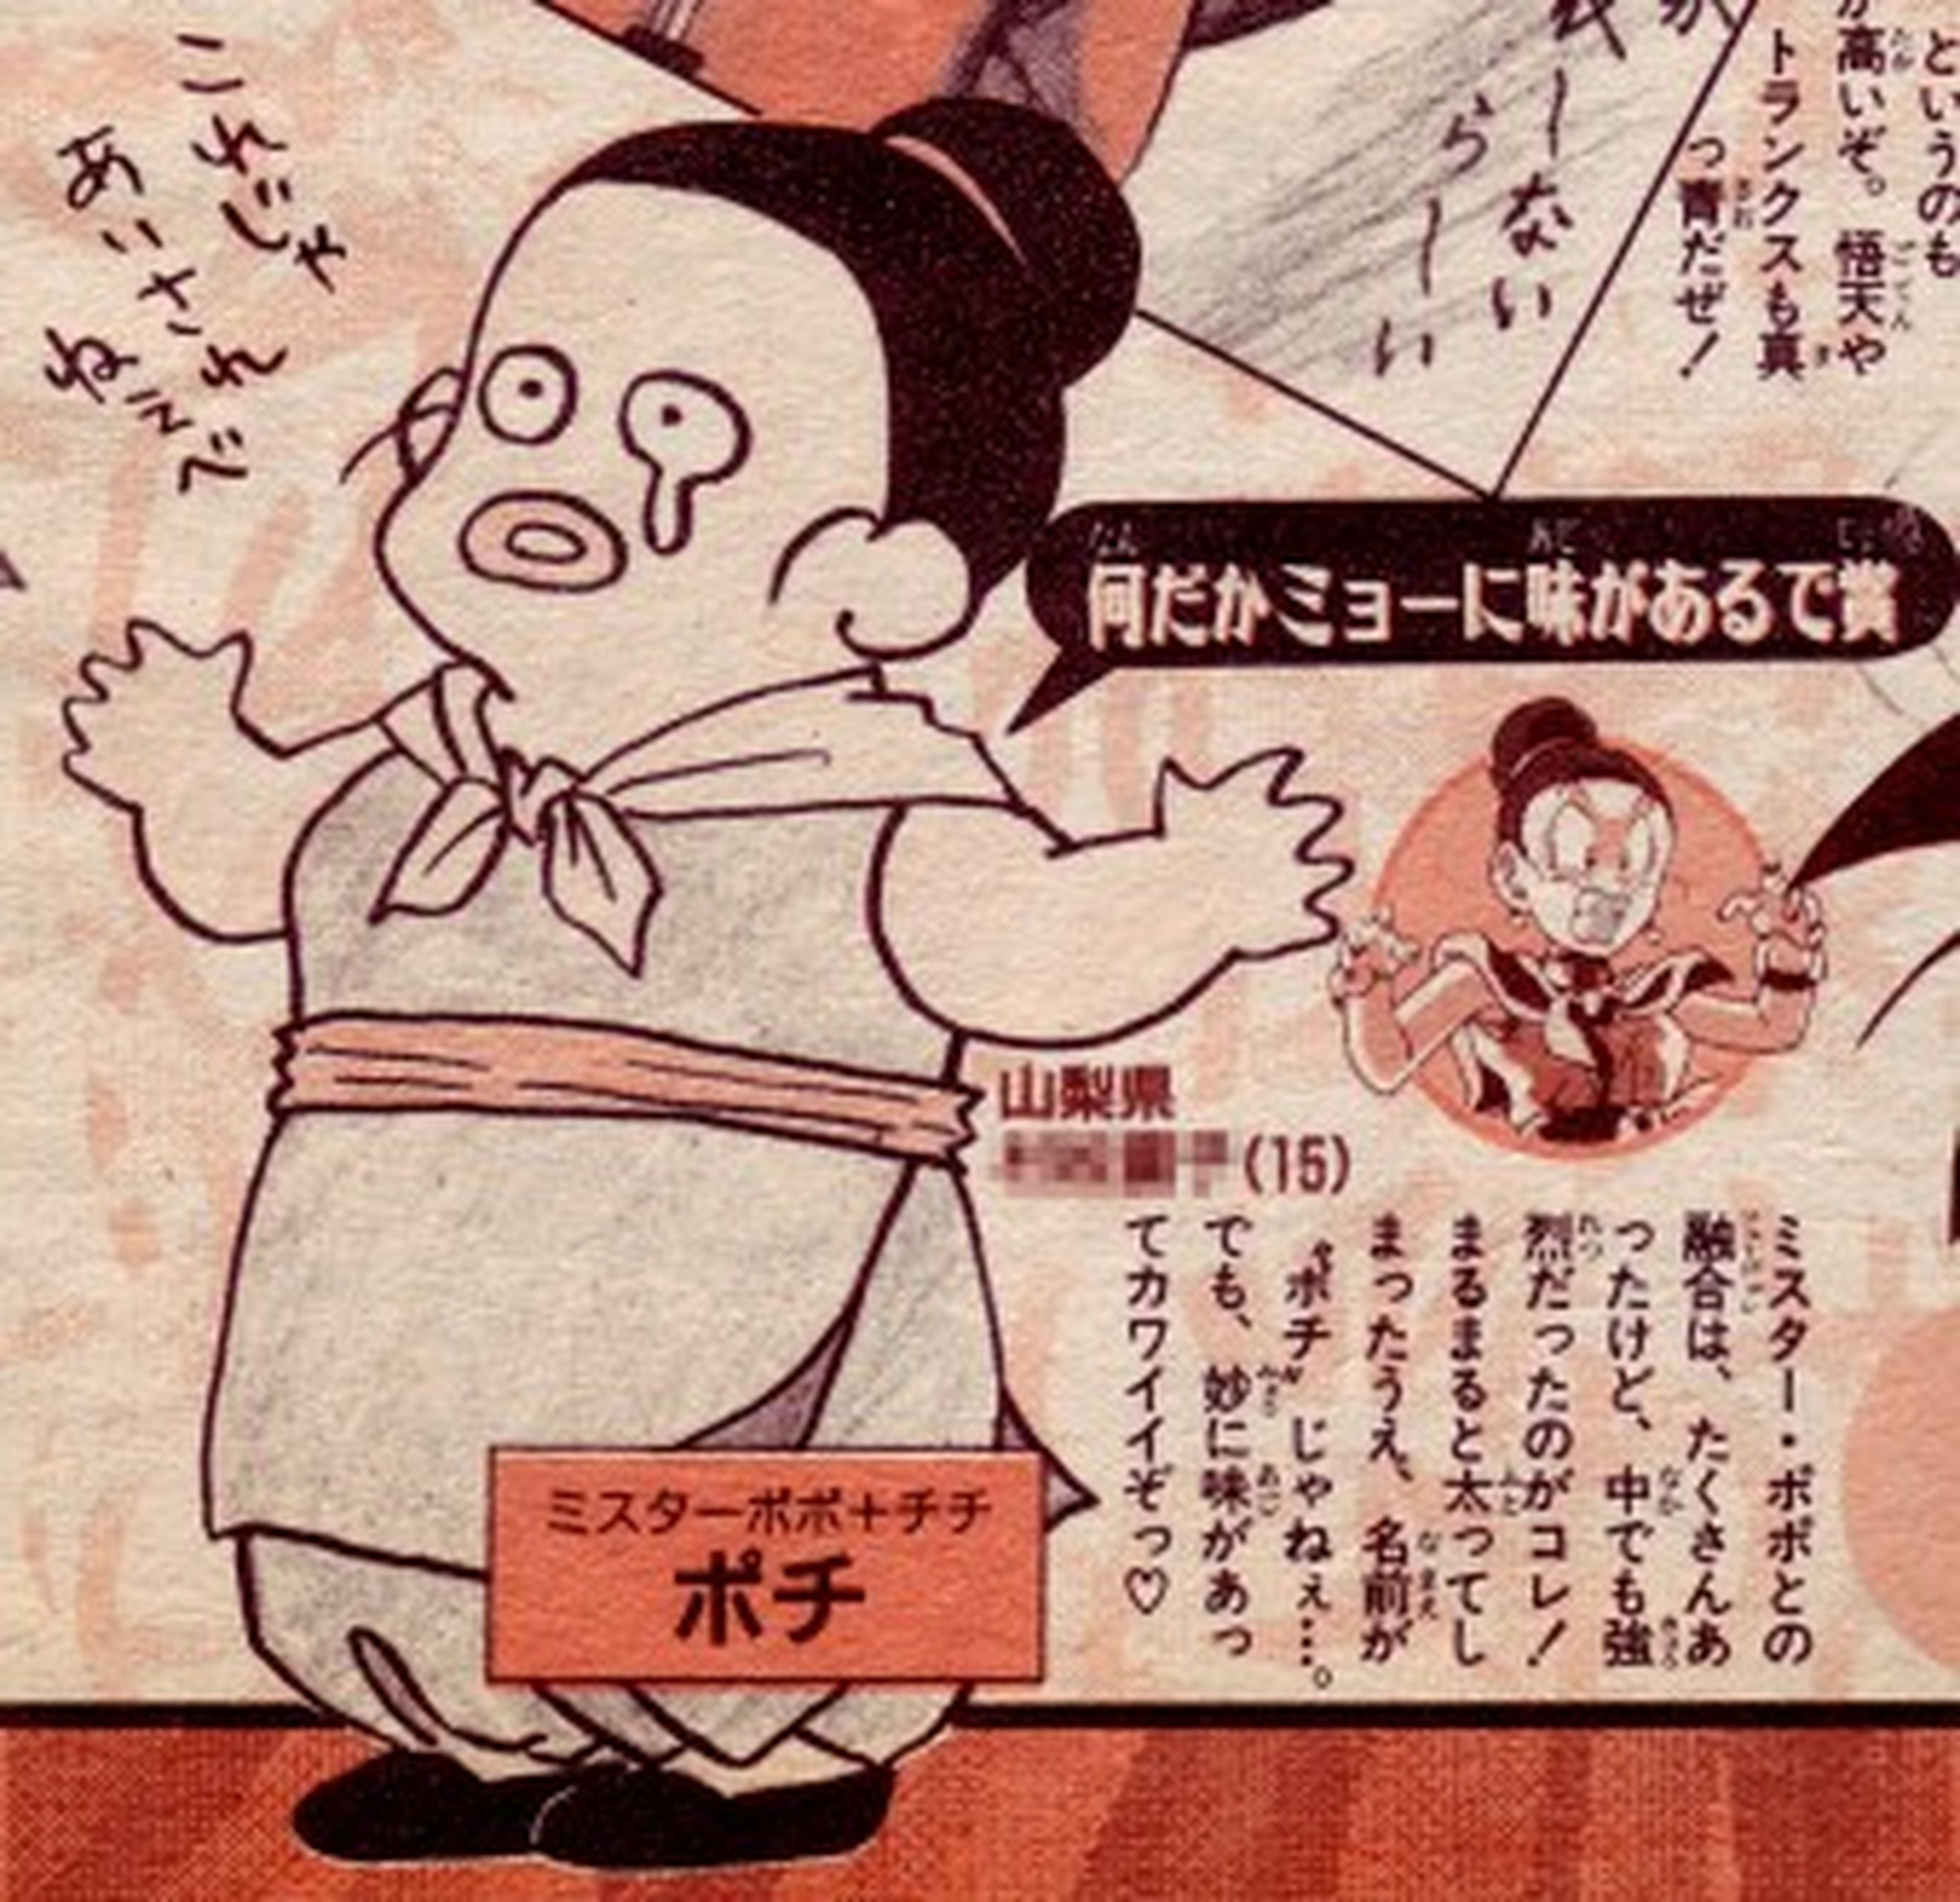 Dragon Ball - Así es la fusión de Chichi y Mr. Popo que se dibujó para la revista Shonen Jump en los años 90